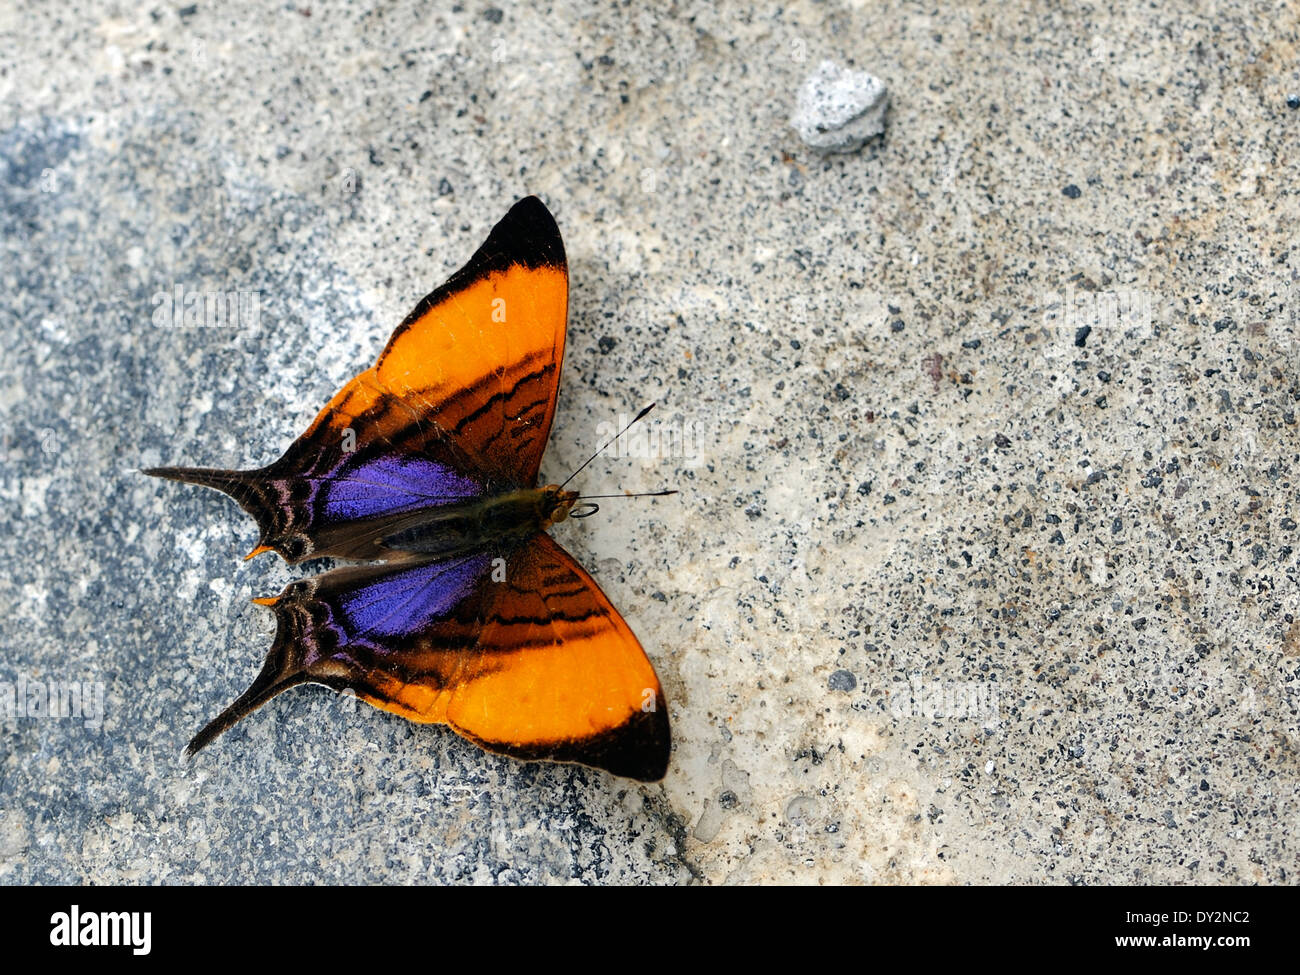 Une orange, marron, rouge et bleu papillon à queue fourchue repose sur une chaussée de pierre. Banque D'Images